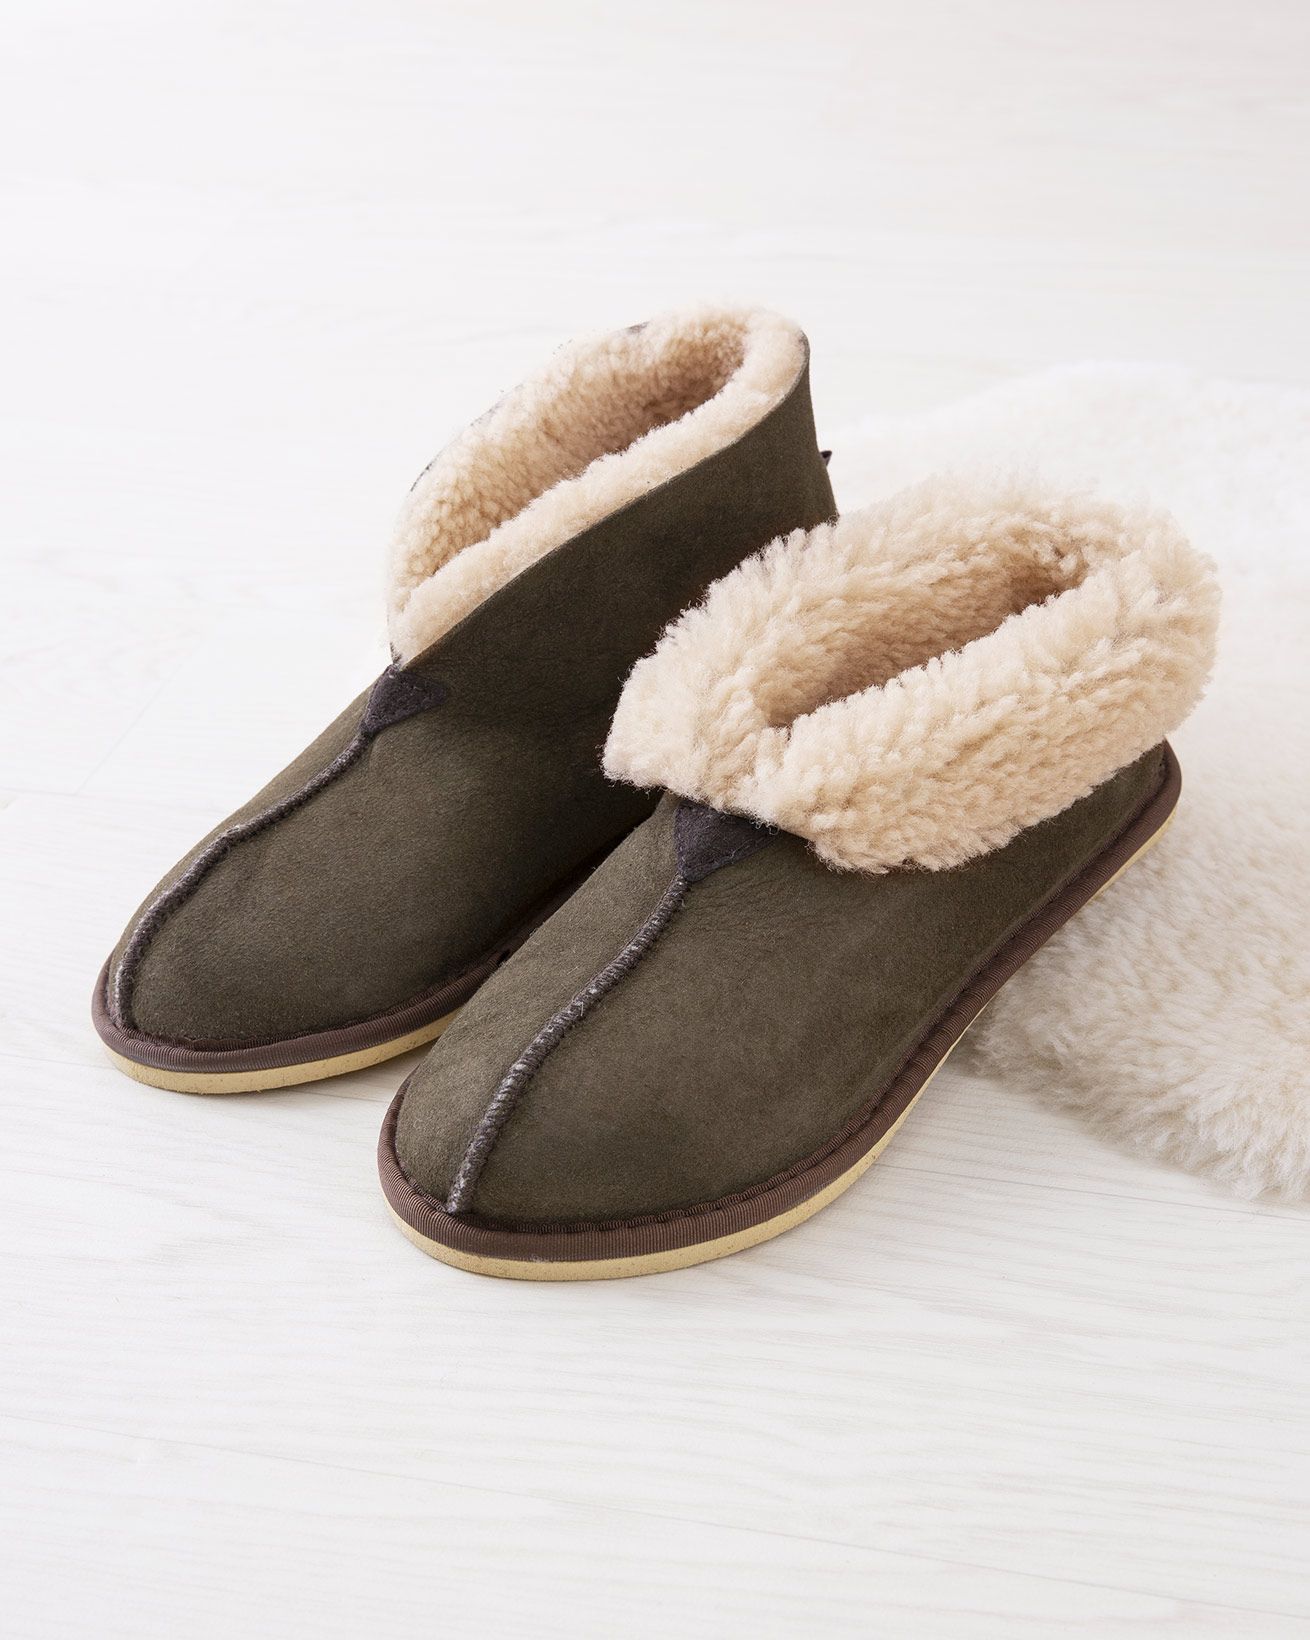 2100_ladies'-bootee-slippers_moorland_lifestyle_lfs.jpg